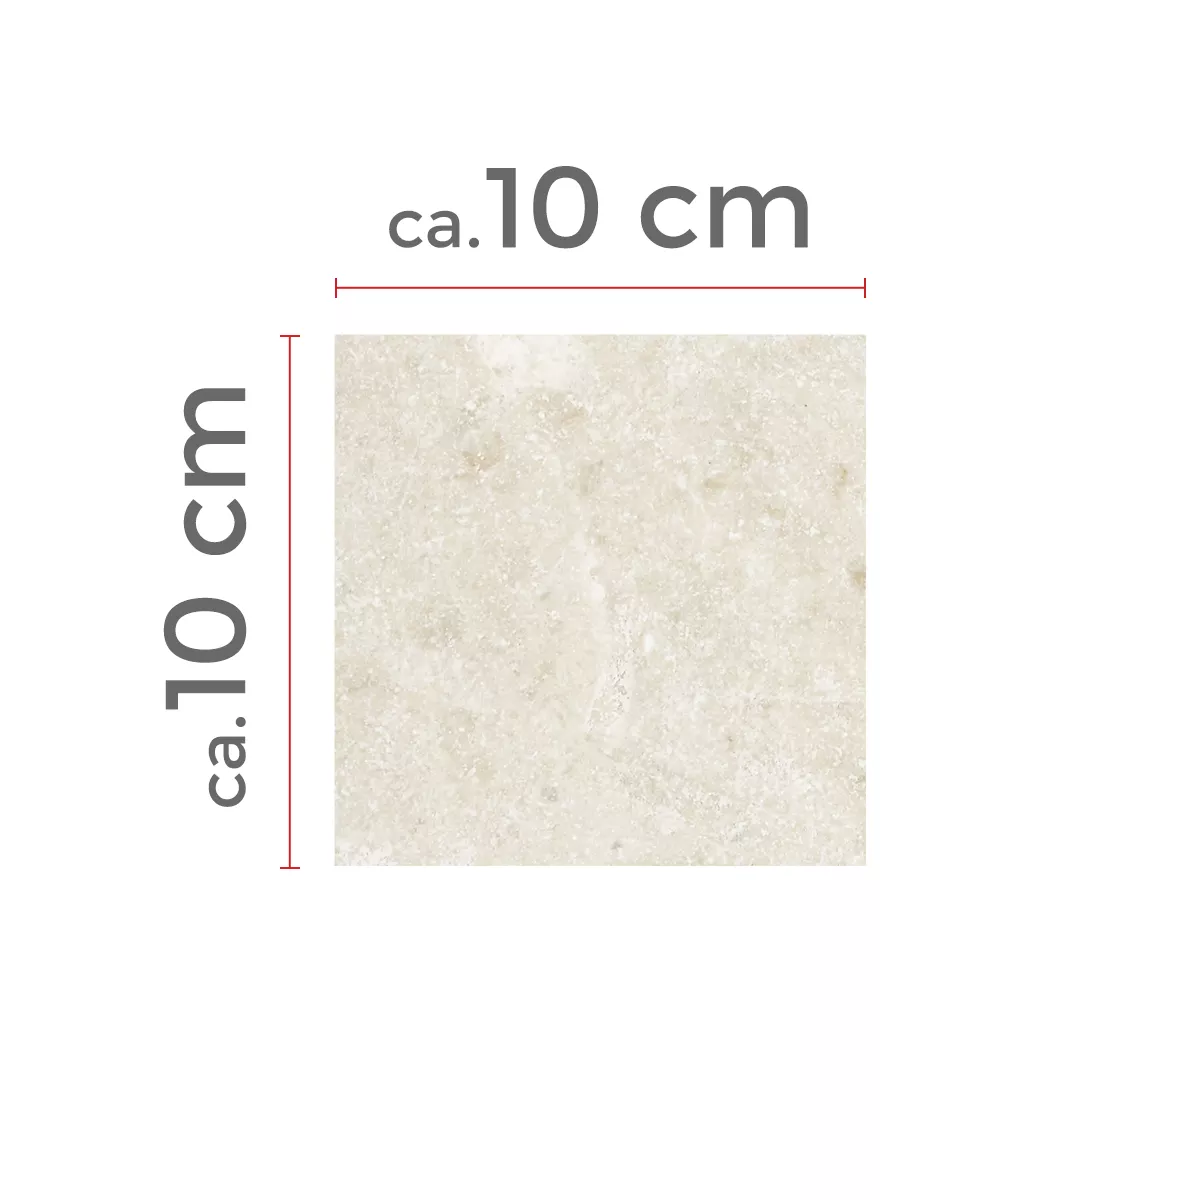 Sample Natursteentegels Marmer Afyon Beige 10x10cm